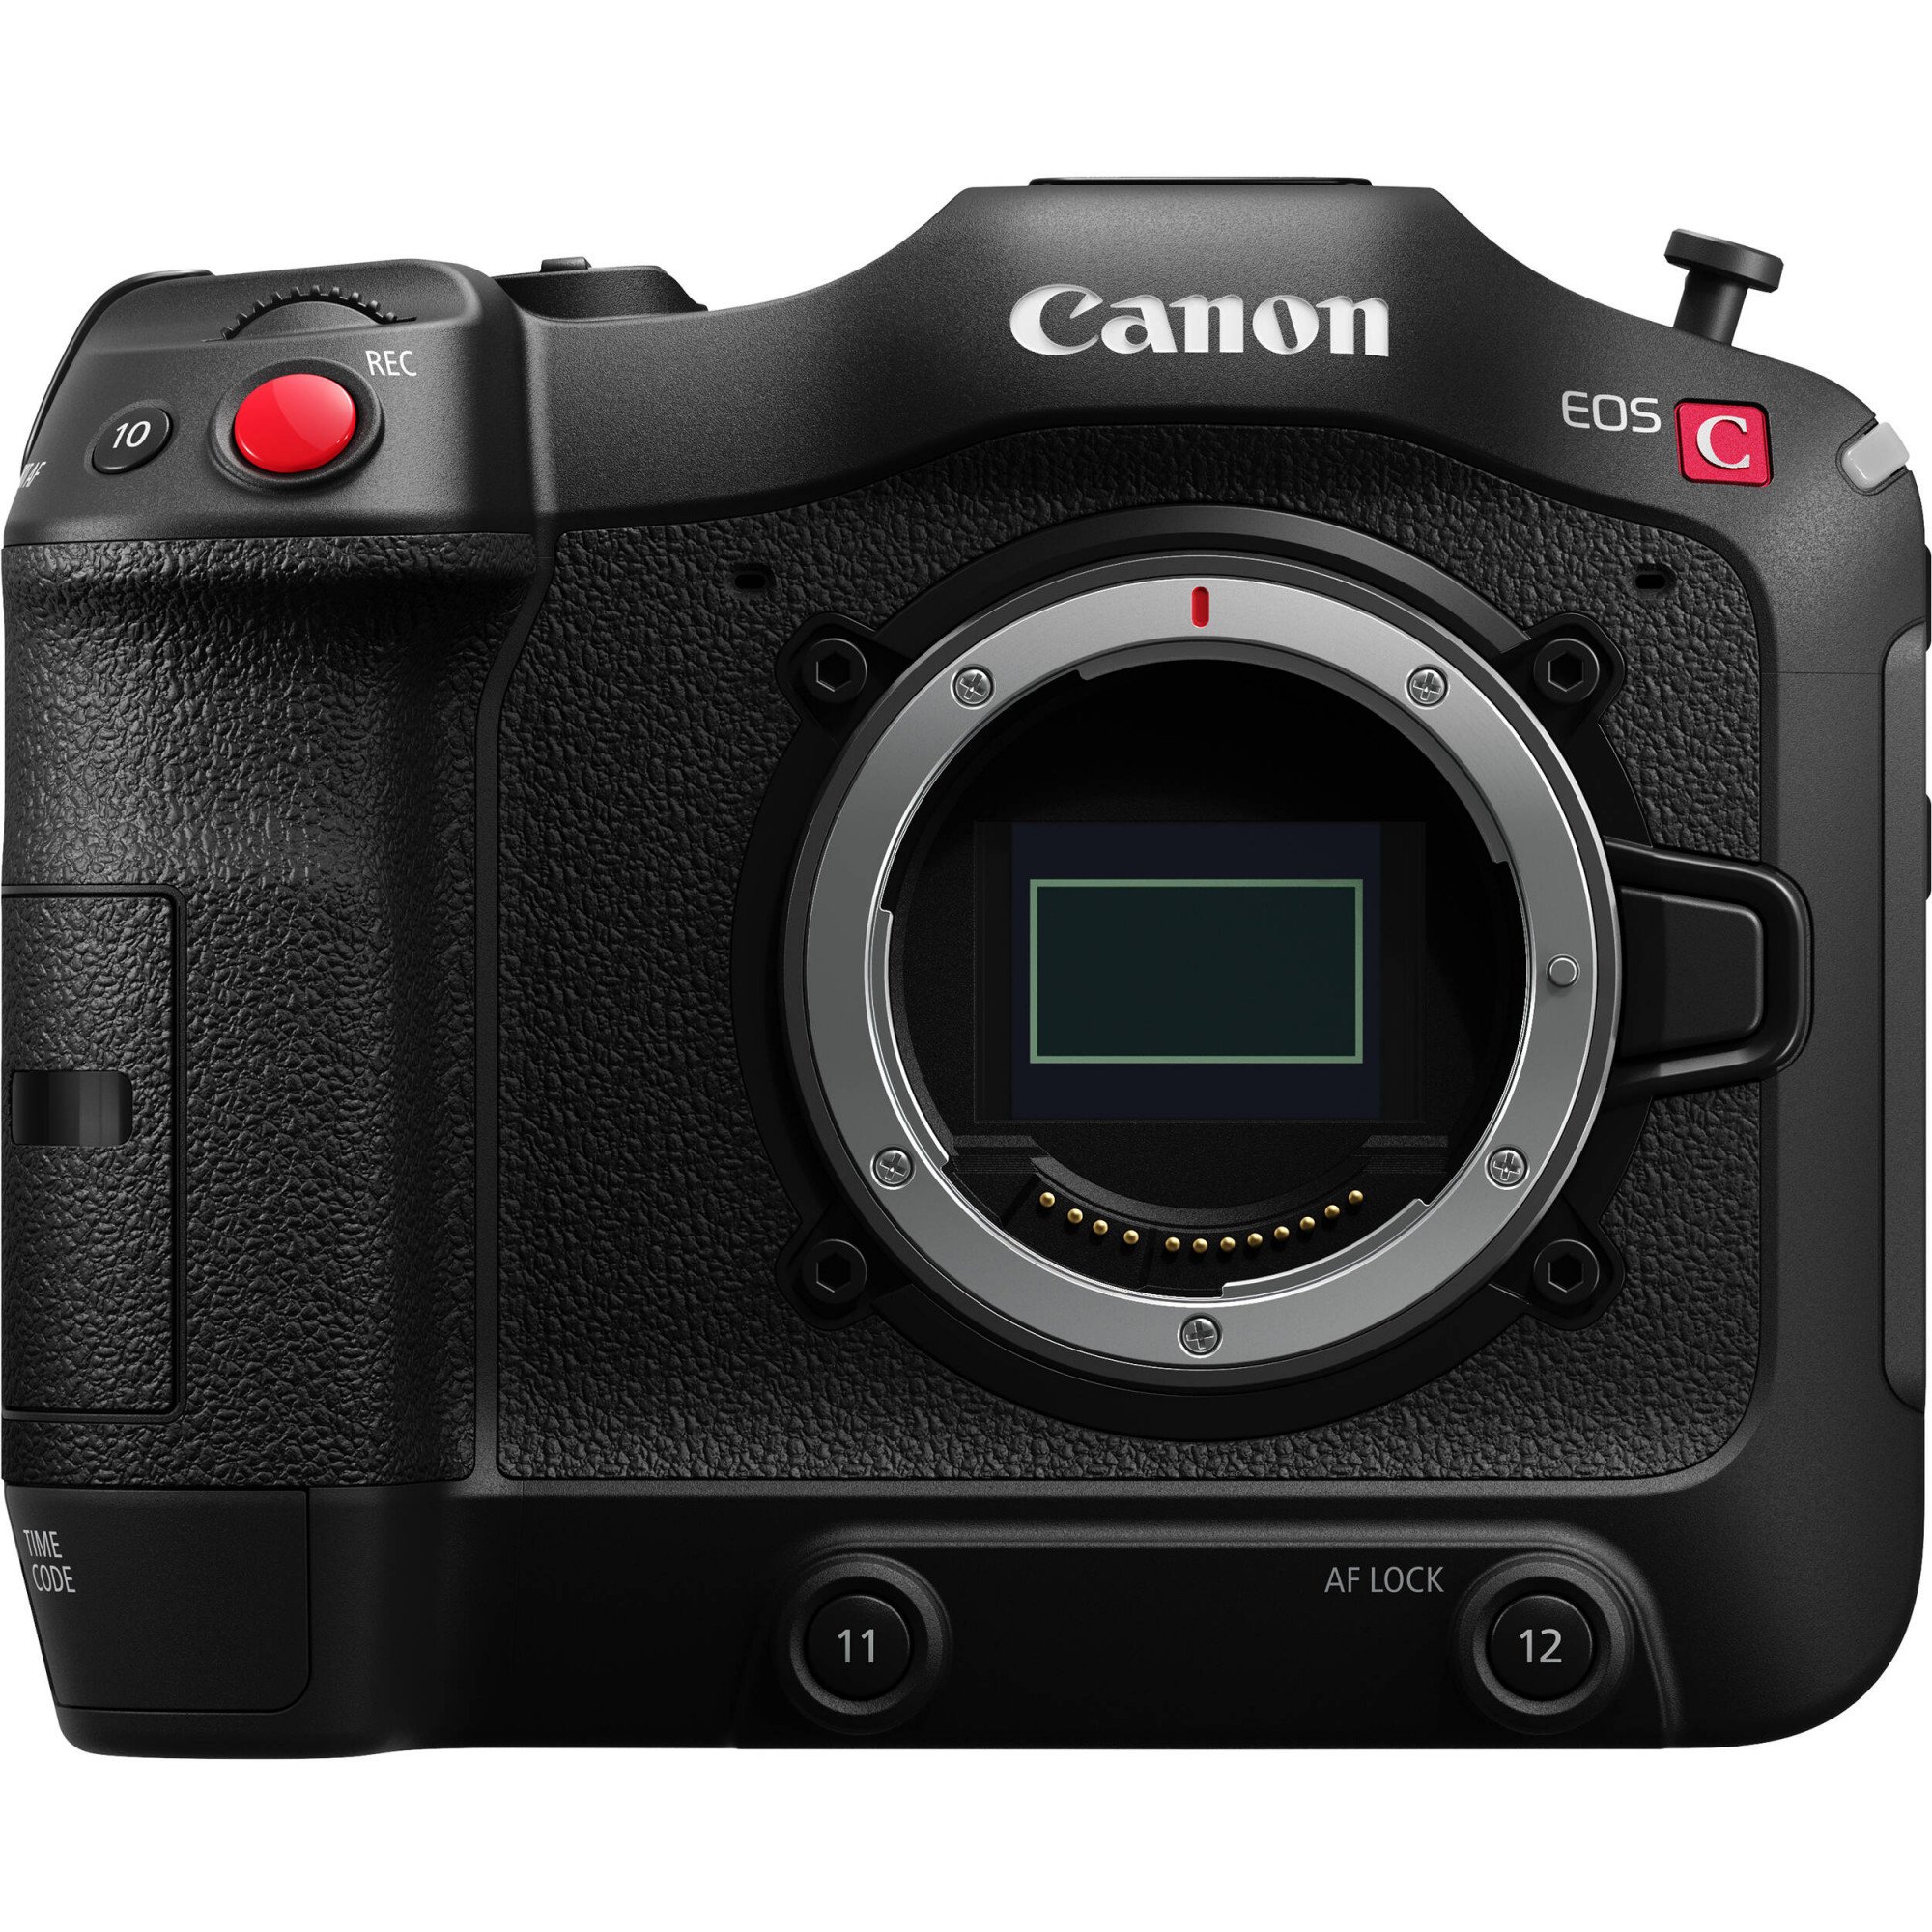 Canon EOS C70 (Mới 100%) Bảo hành chính hãng 02 năm trên toàn quốc